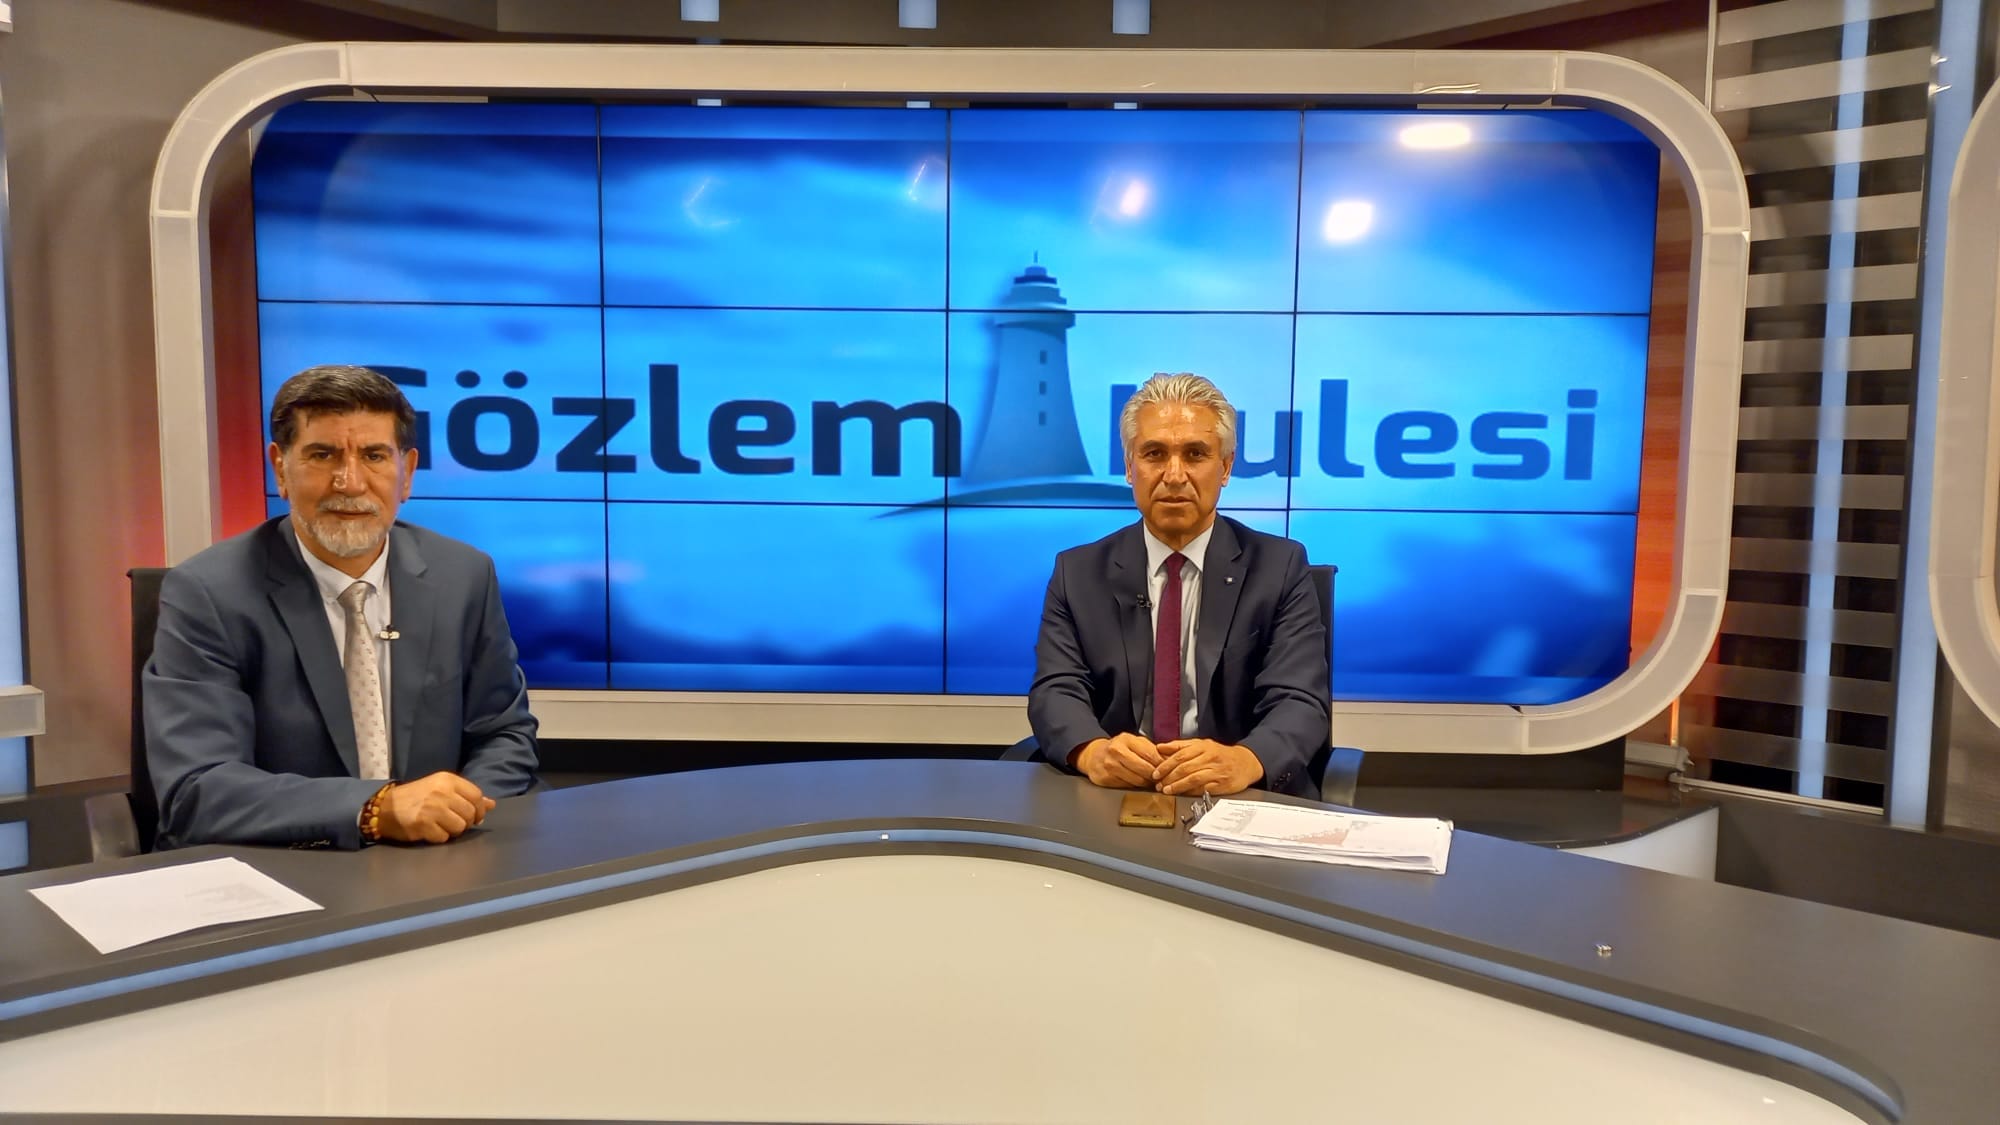 ŞUBE BAŞKANIMIZ AS TV "GÖZLEM KULESİ" PROGRAMININ KONUĞU OLDU